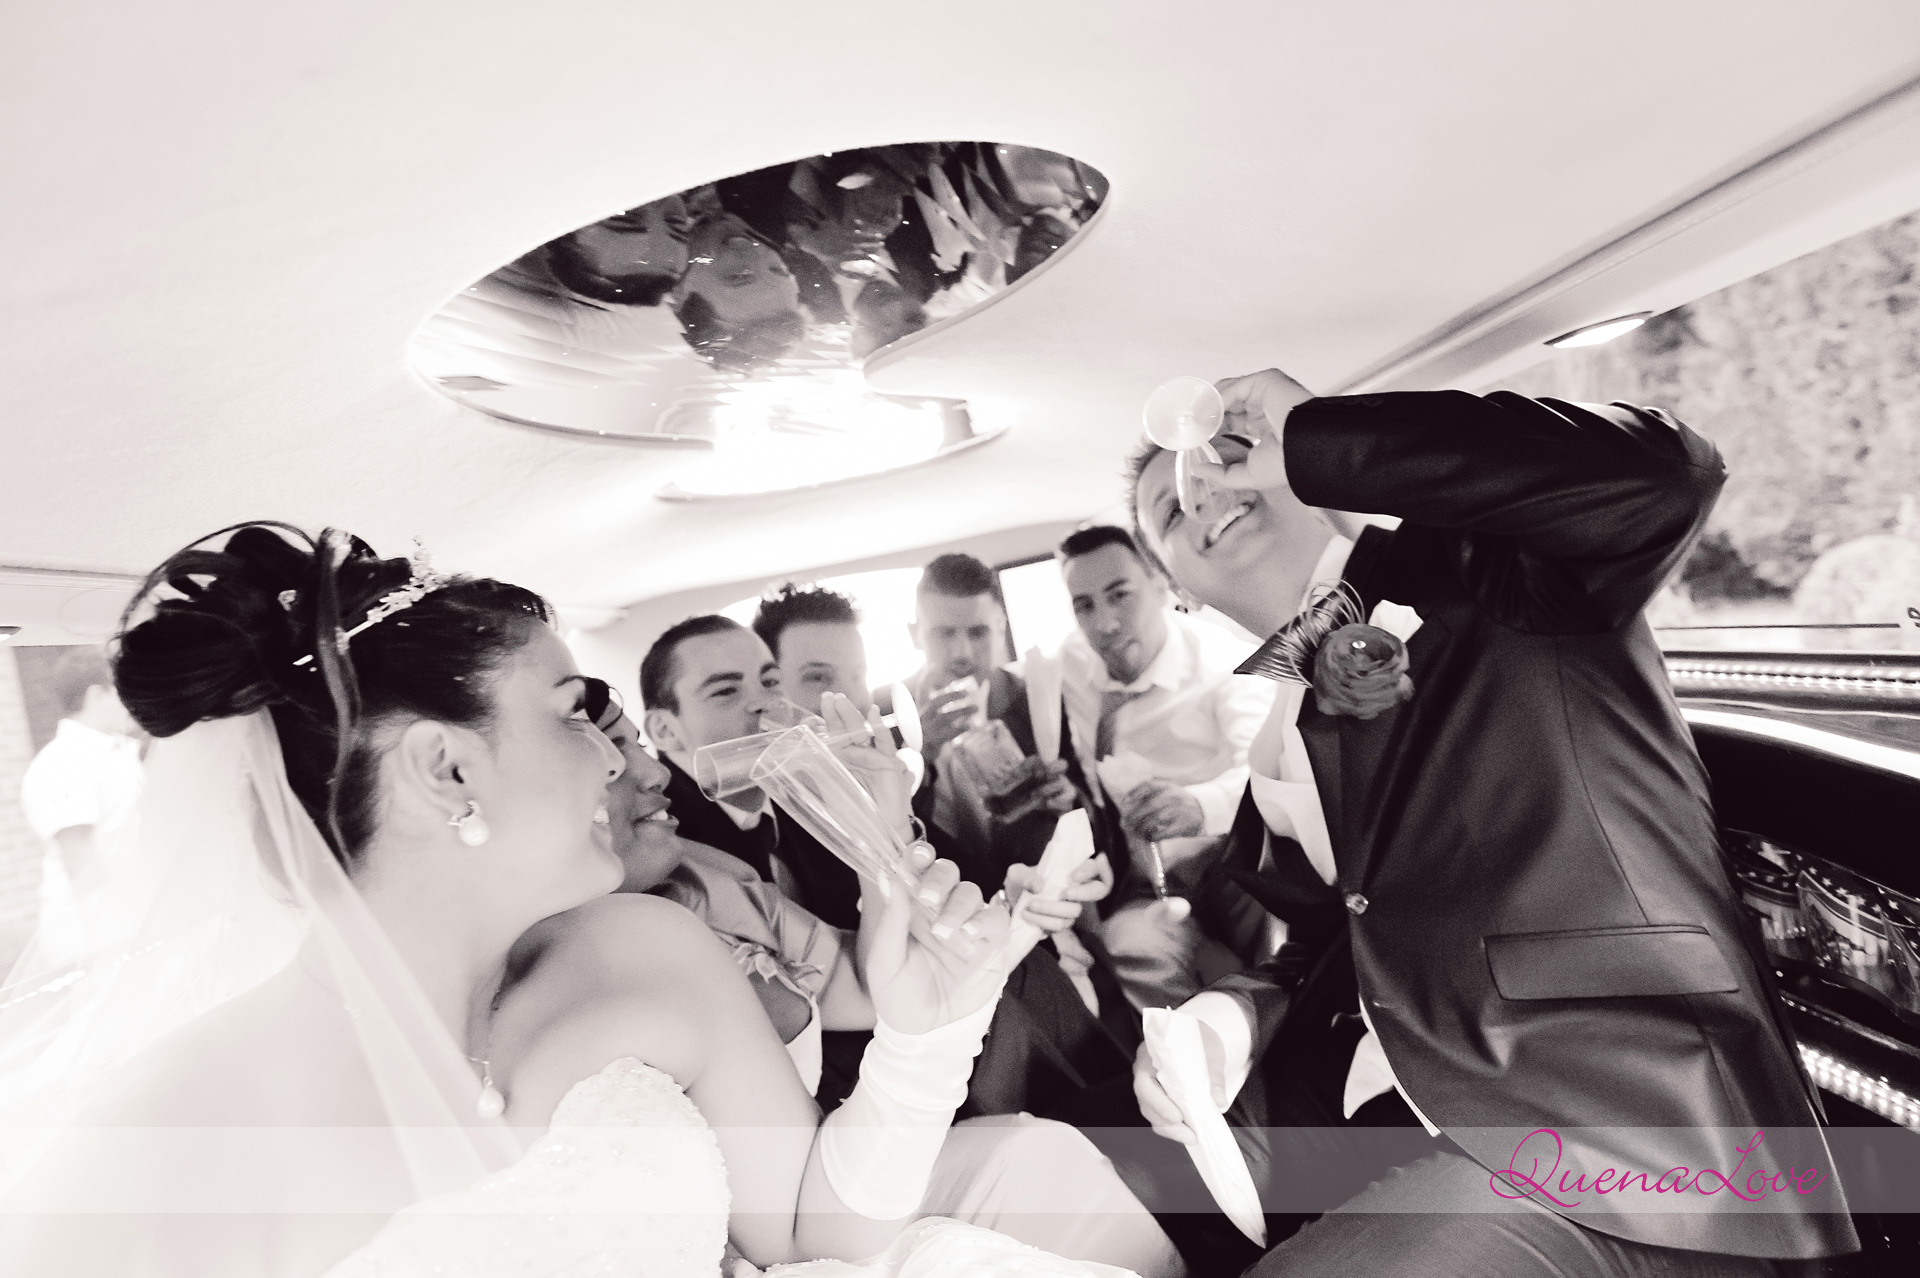 Séance de Couple au Dans la limousine - A&D - Mariage - Liege - Quenalove 2013